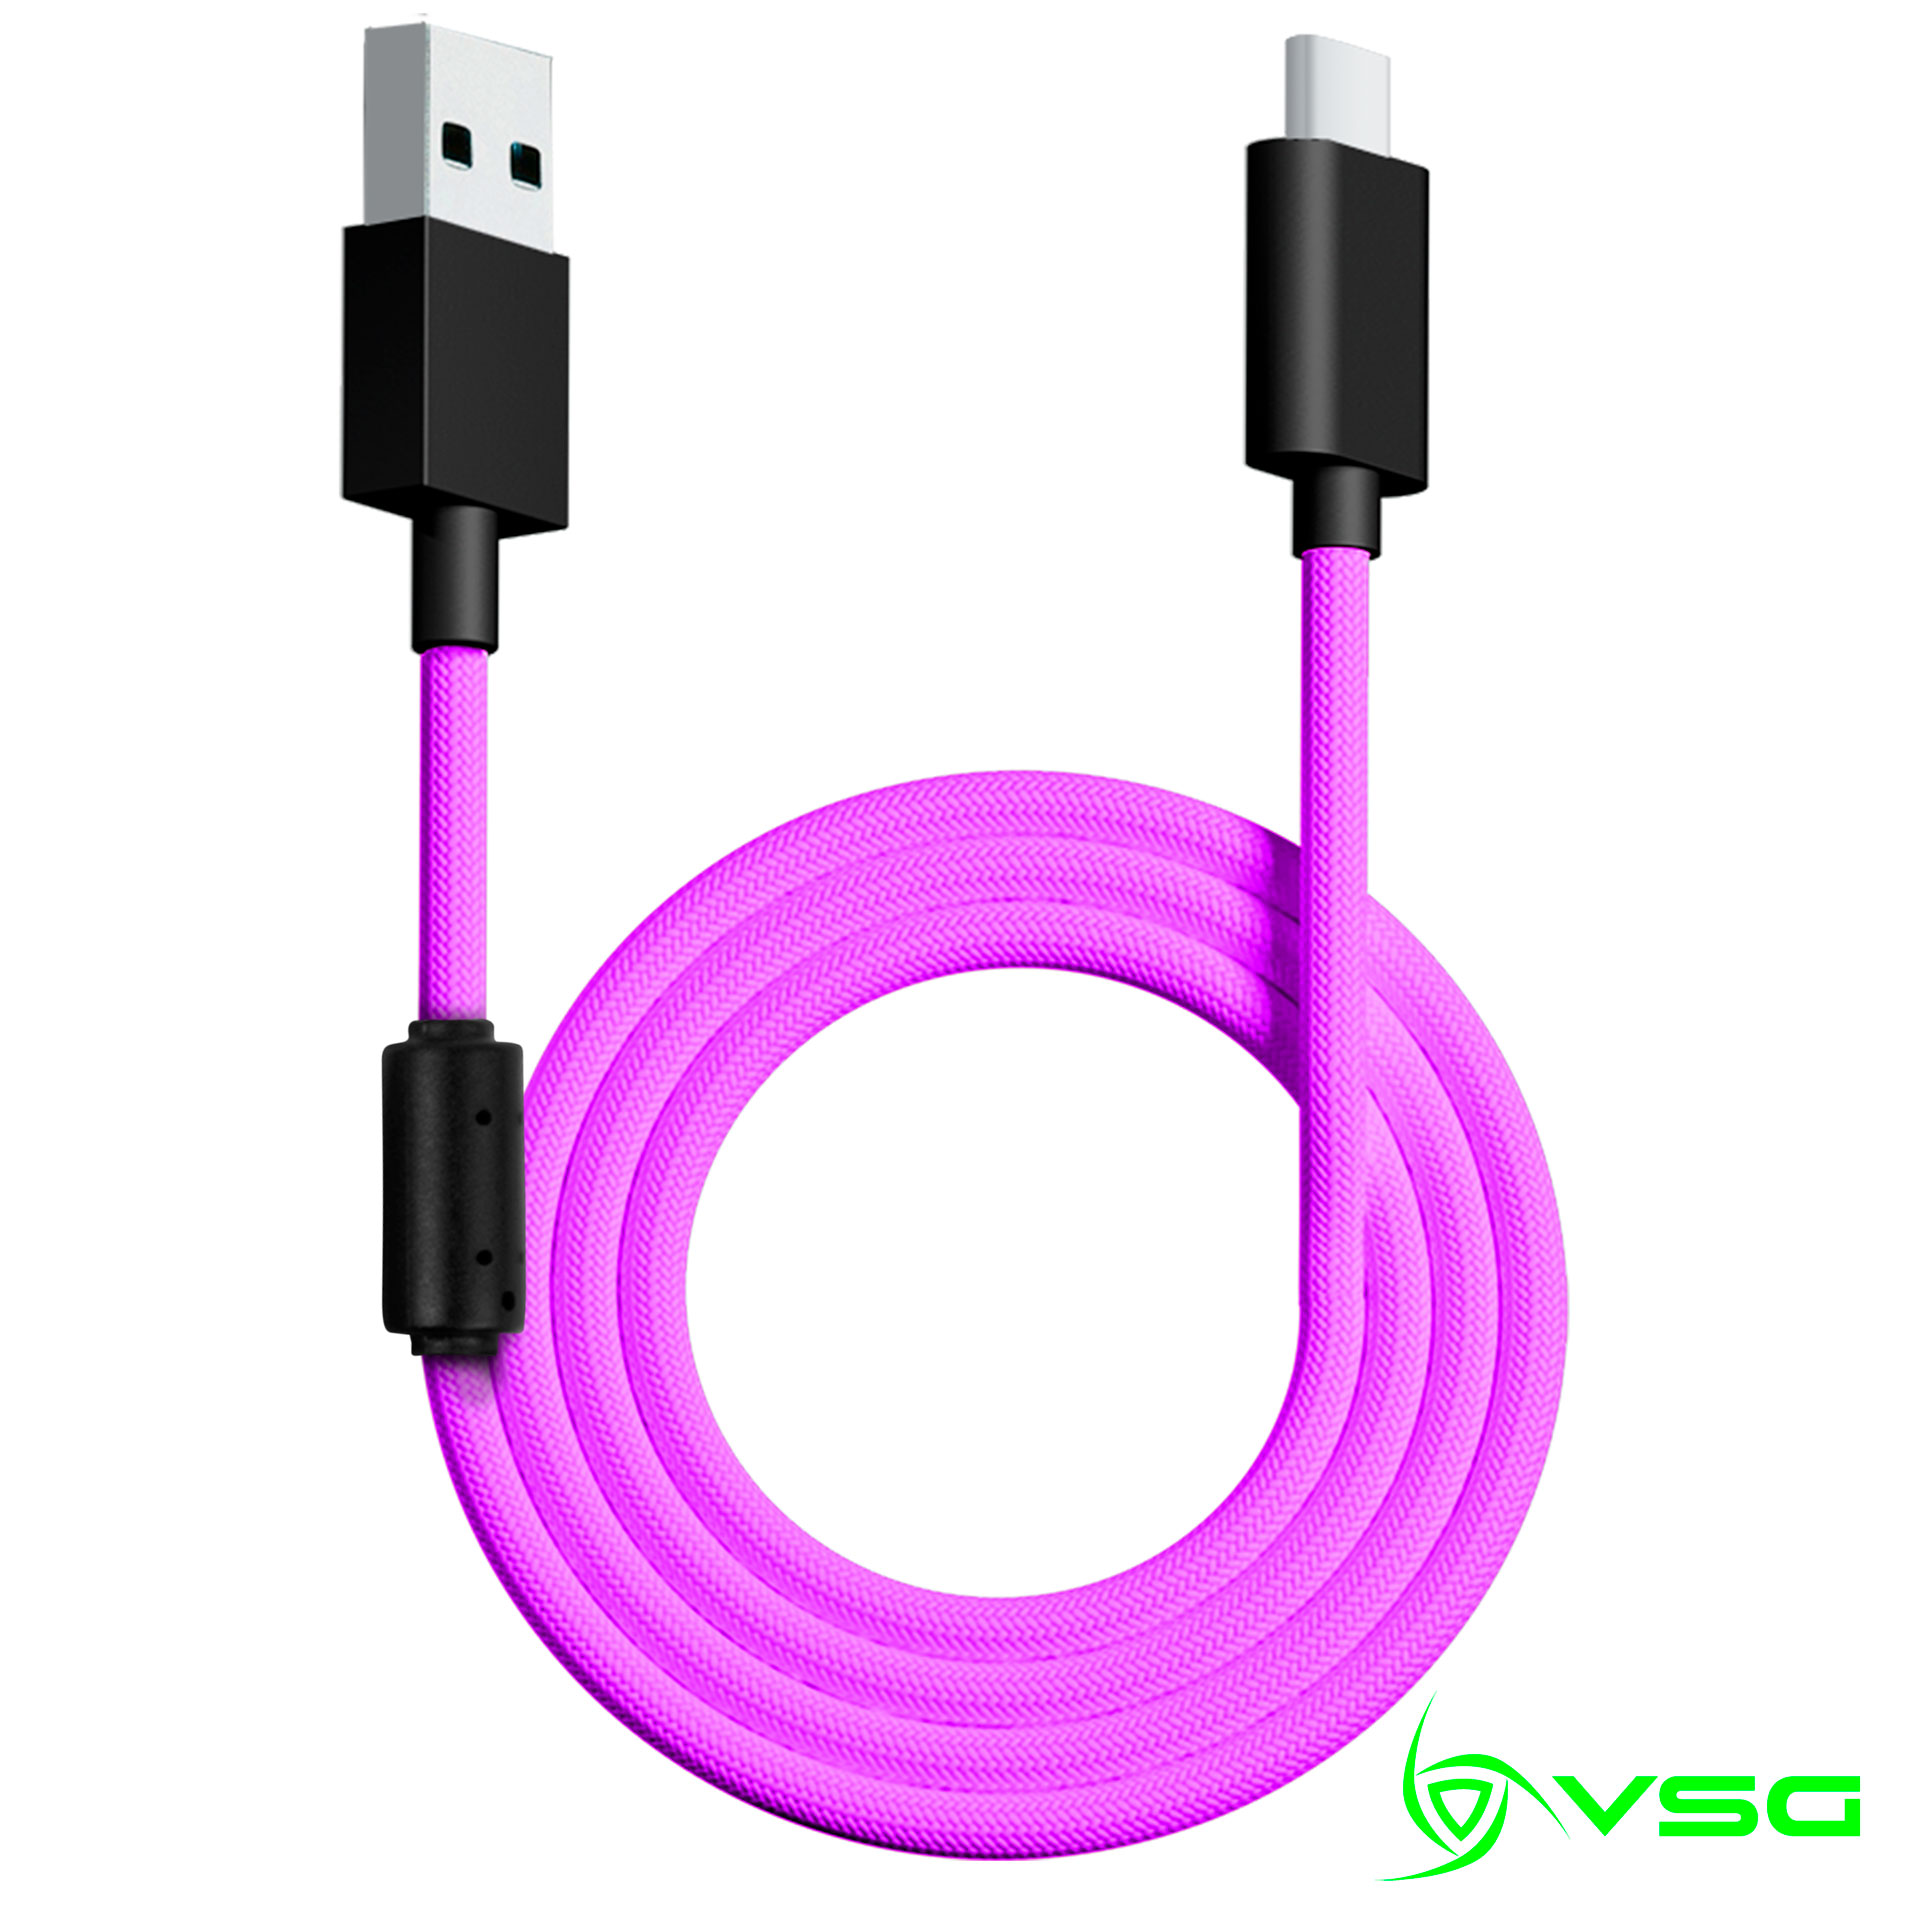 CABLE USB VSG TIPO C PURPURA - VG-CABLE-AQ-PURPLE / Precio: $119.00